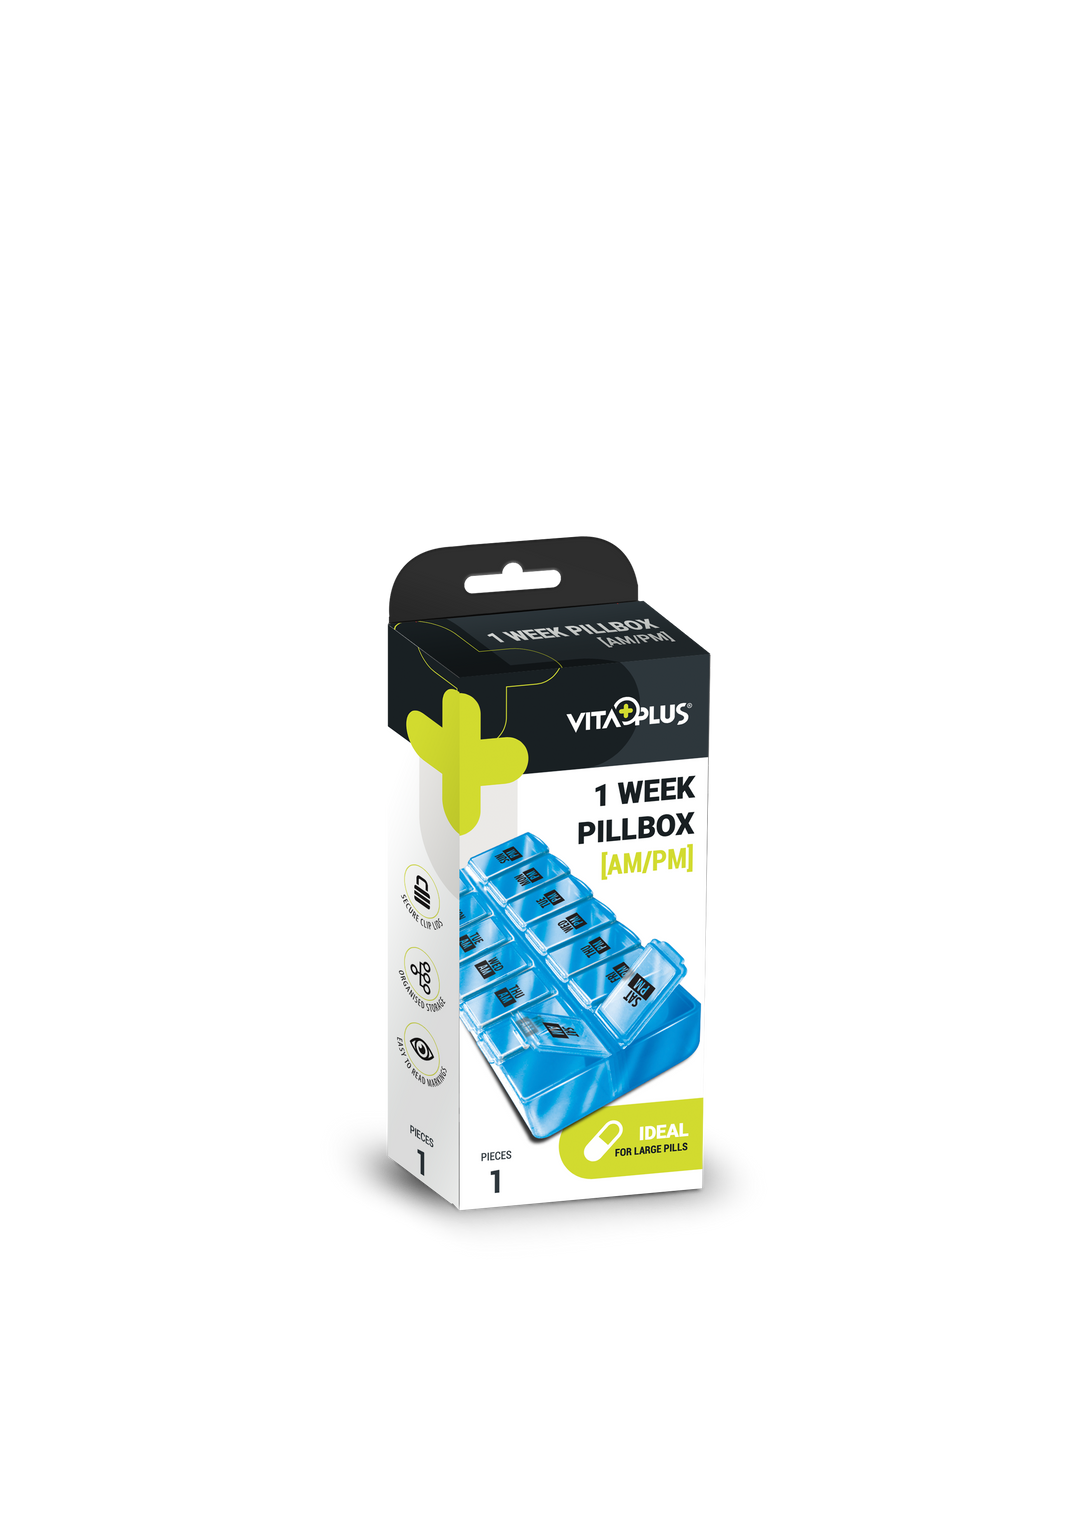 Medinox Vp64011 Коробка для таблеток на 7 дней (утро/вечер)